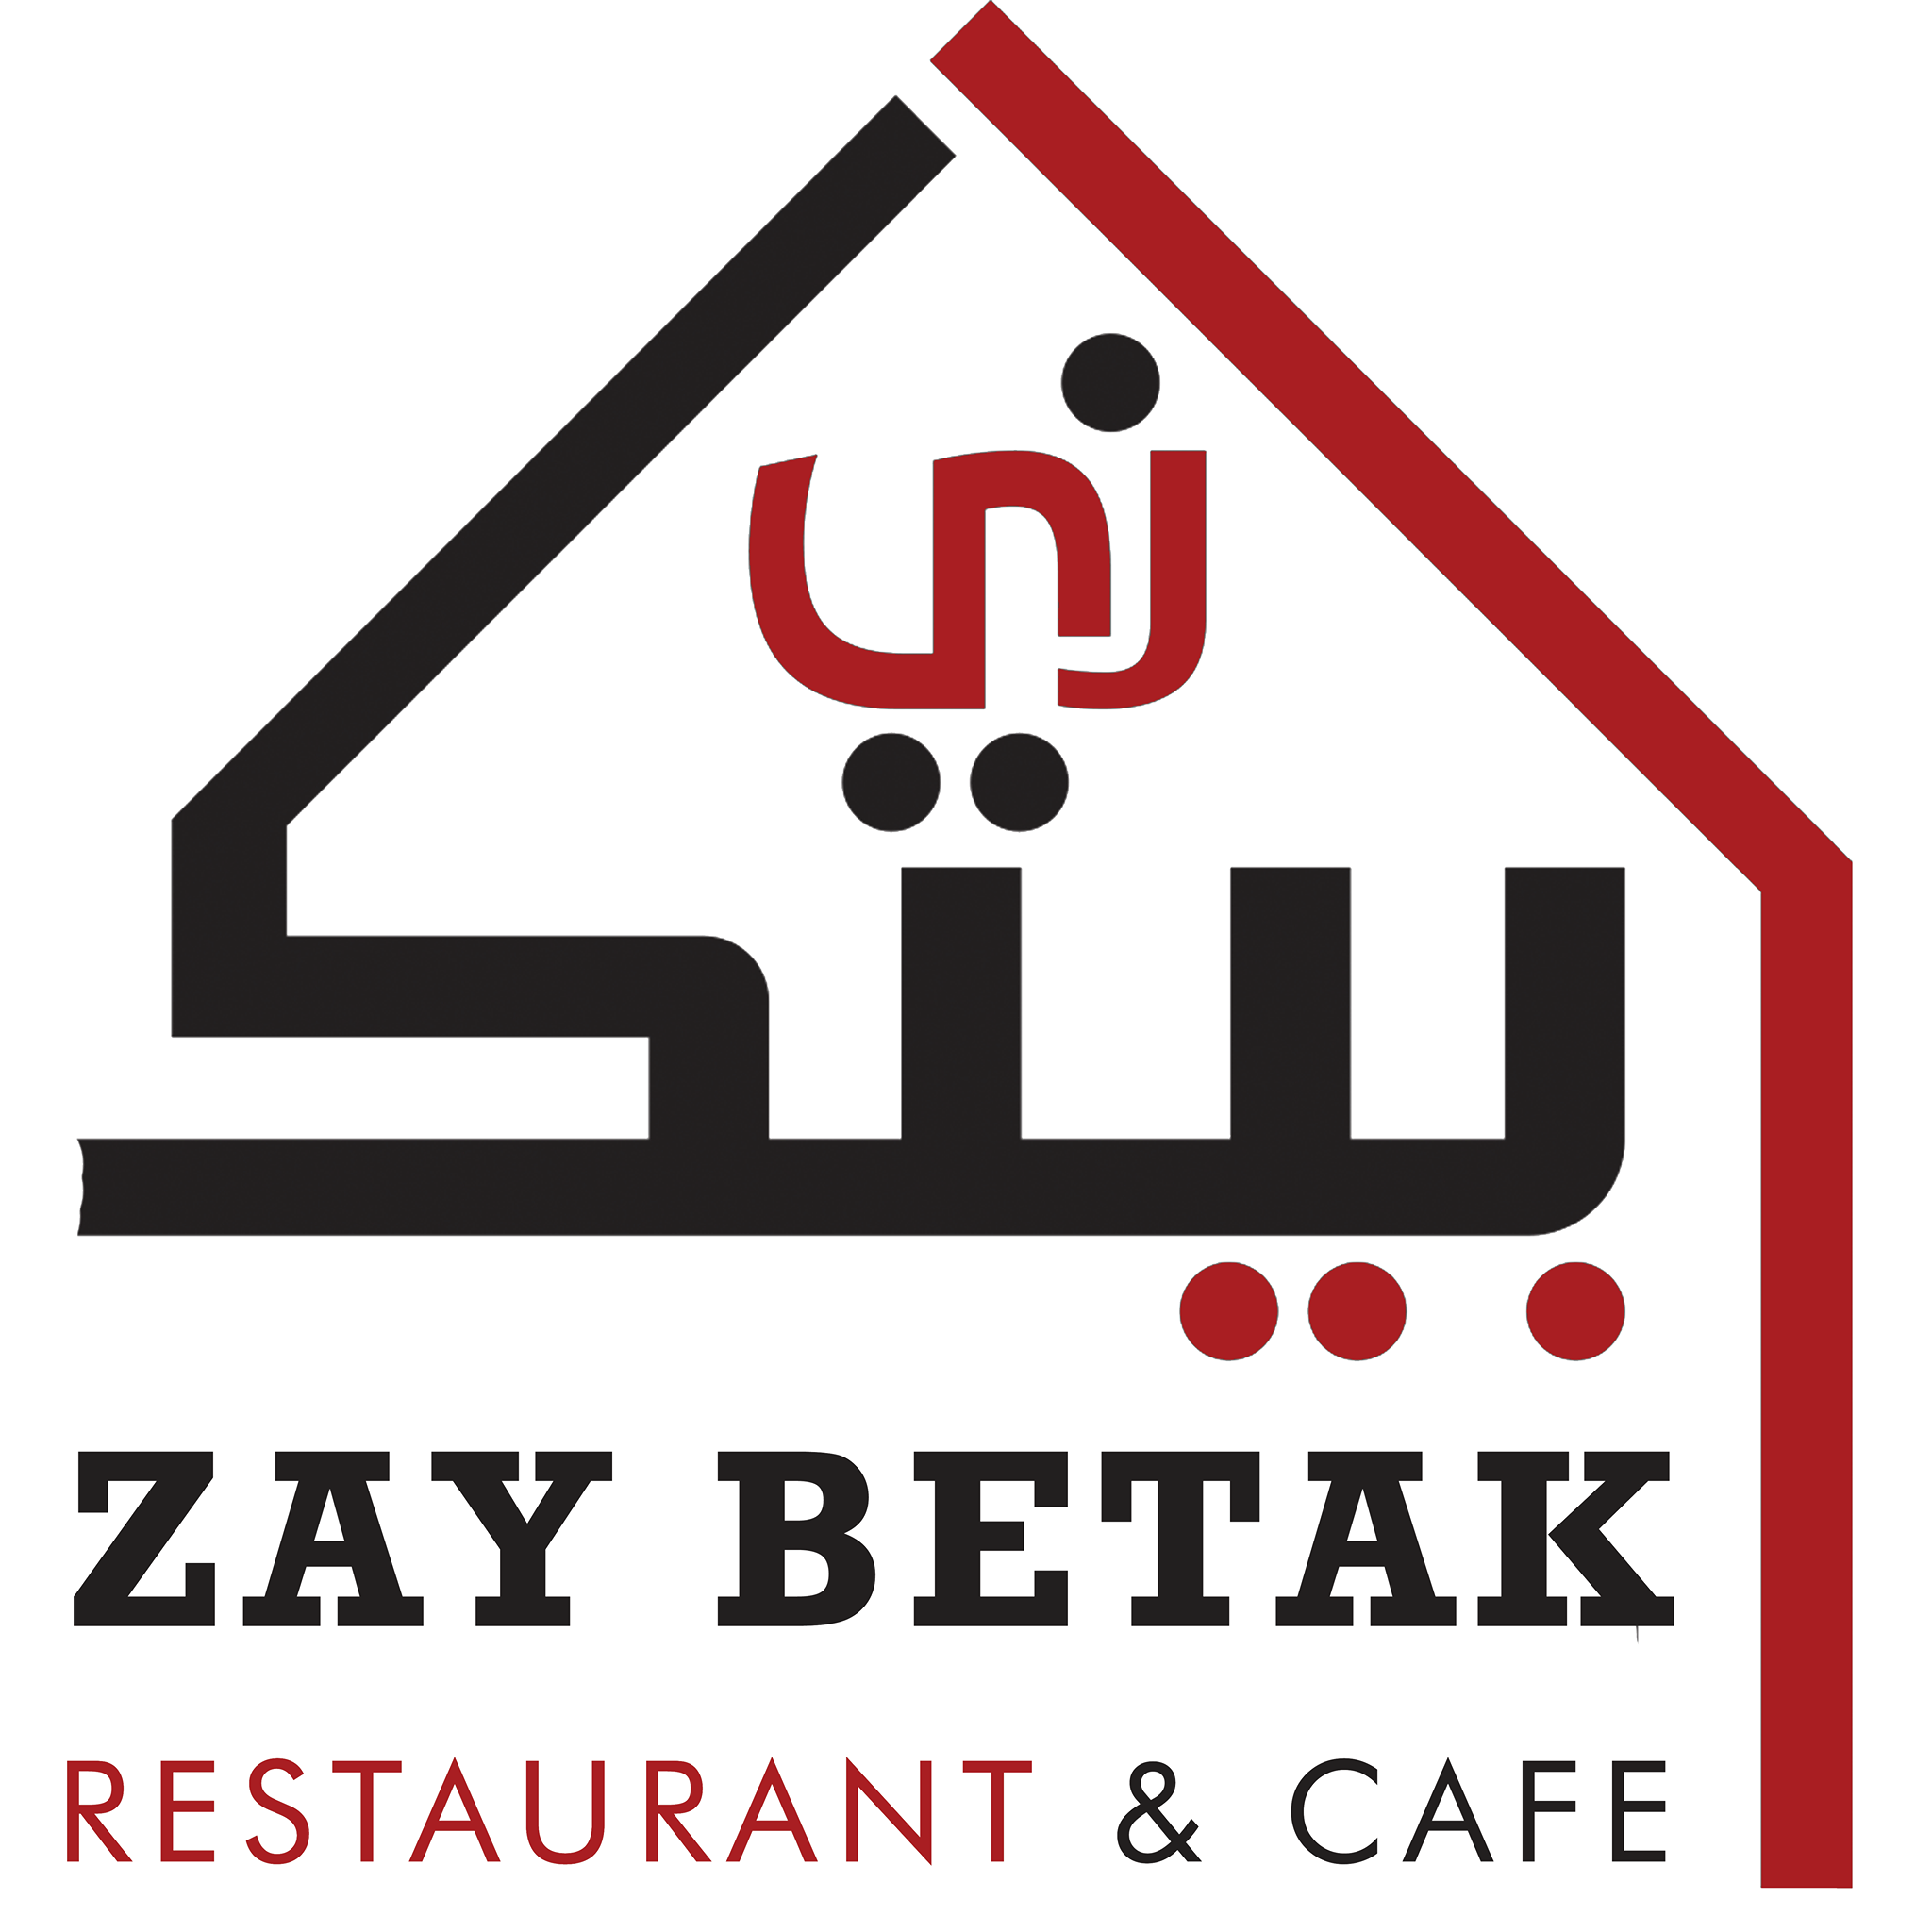 افضل مطاعم وكافيهات في السلط, الاردن - مطعم زي بيتك كافيه - Zay Betak Restaurant & Café